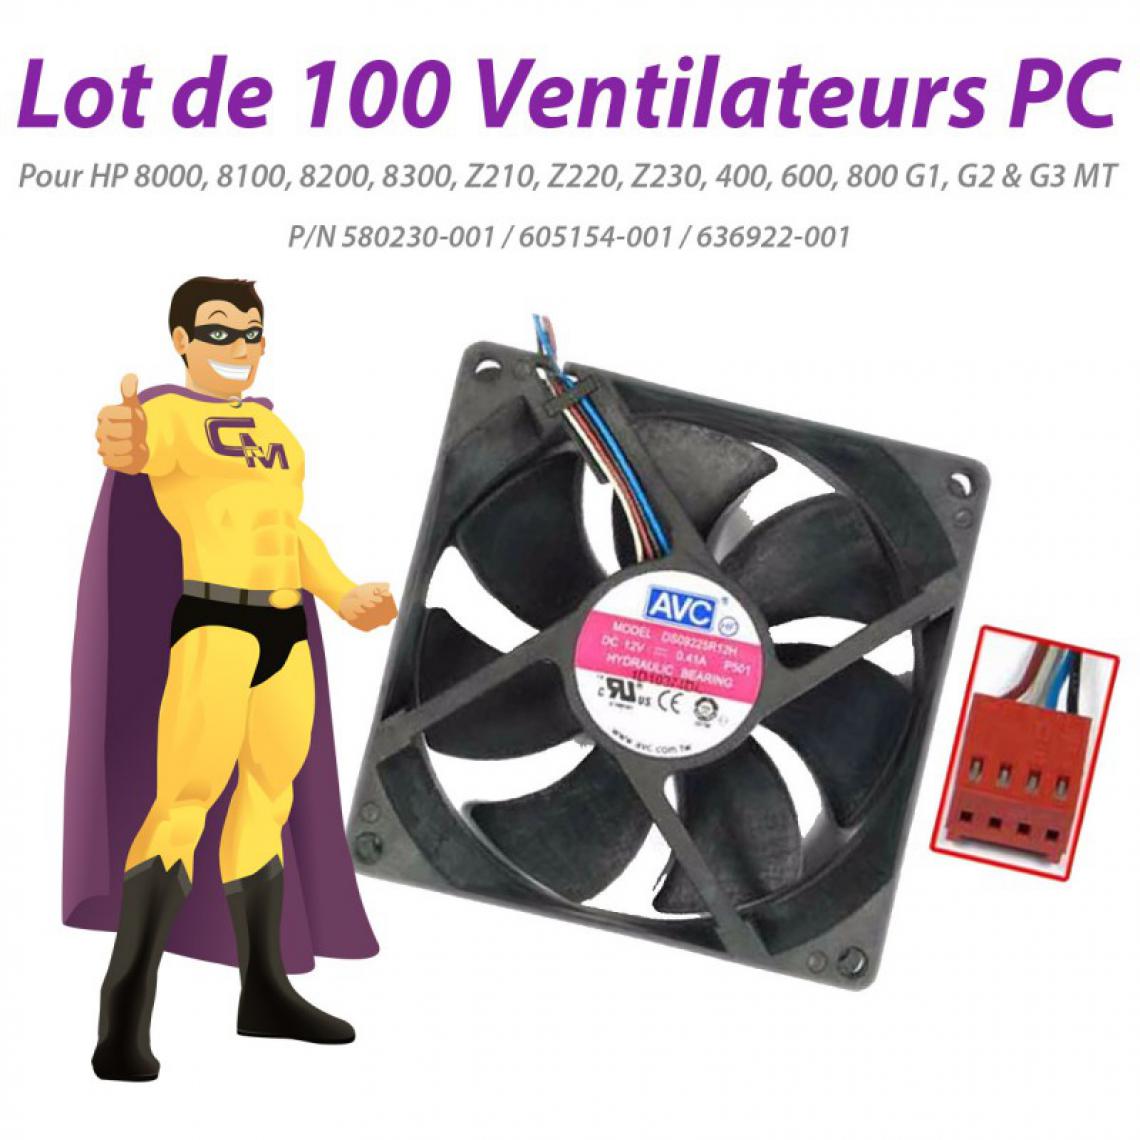 Hp - Lot x100 Ventilateurs PC HP 8100 8200 8300 Z210 Z220 Z230 600 800 G1 G2 G3 MT - Ventilateur Pour Boîtier